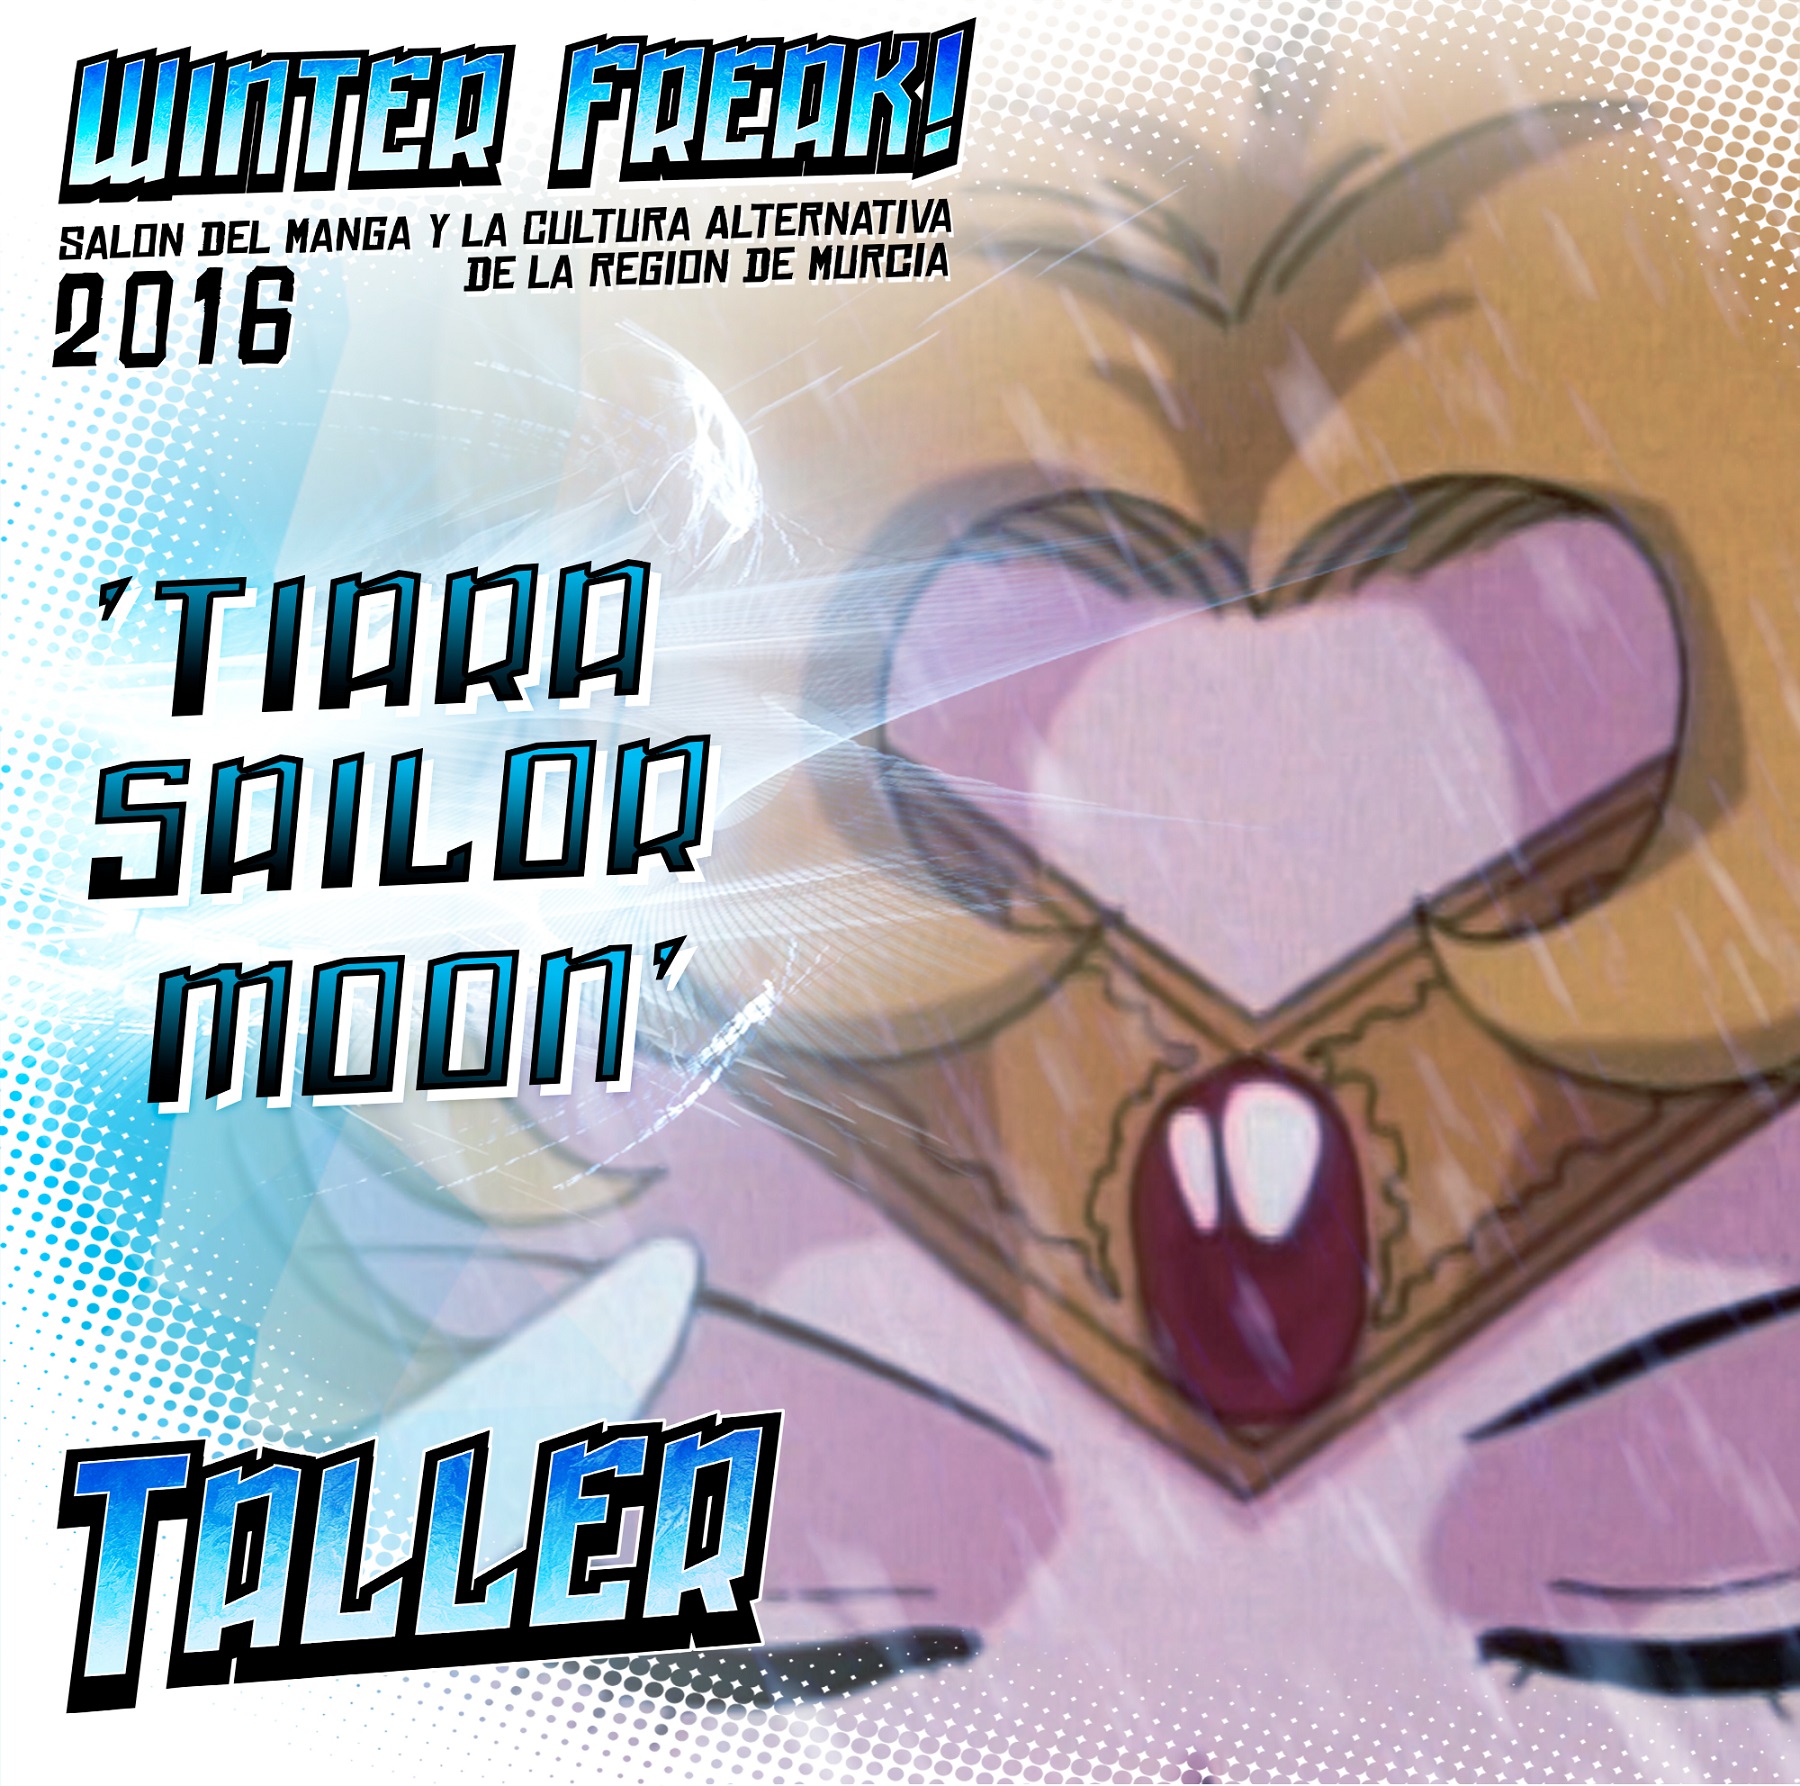 Tiara Sailor Moon